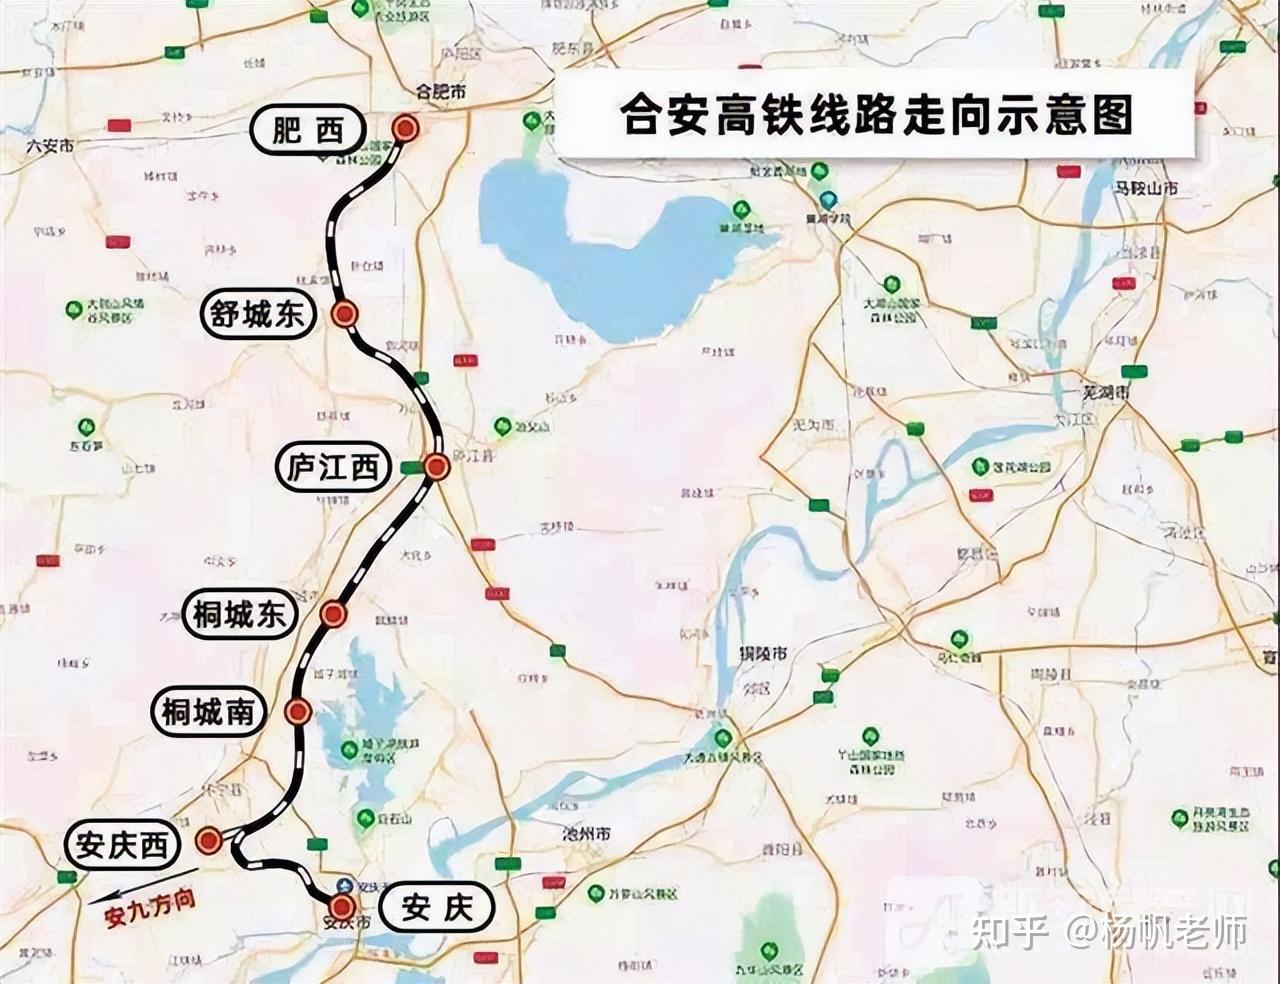 安庆市POI数据|边界|建筑轮廓|铁路轨道|道路路网|水域|水系水路|GeoJSON|Shapefile-安徽省-POI数据